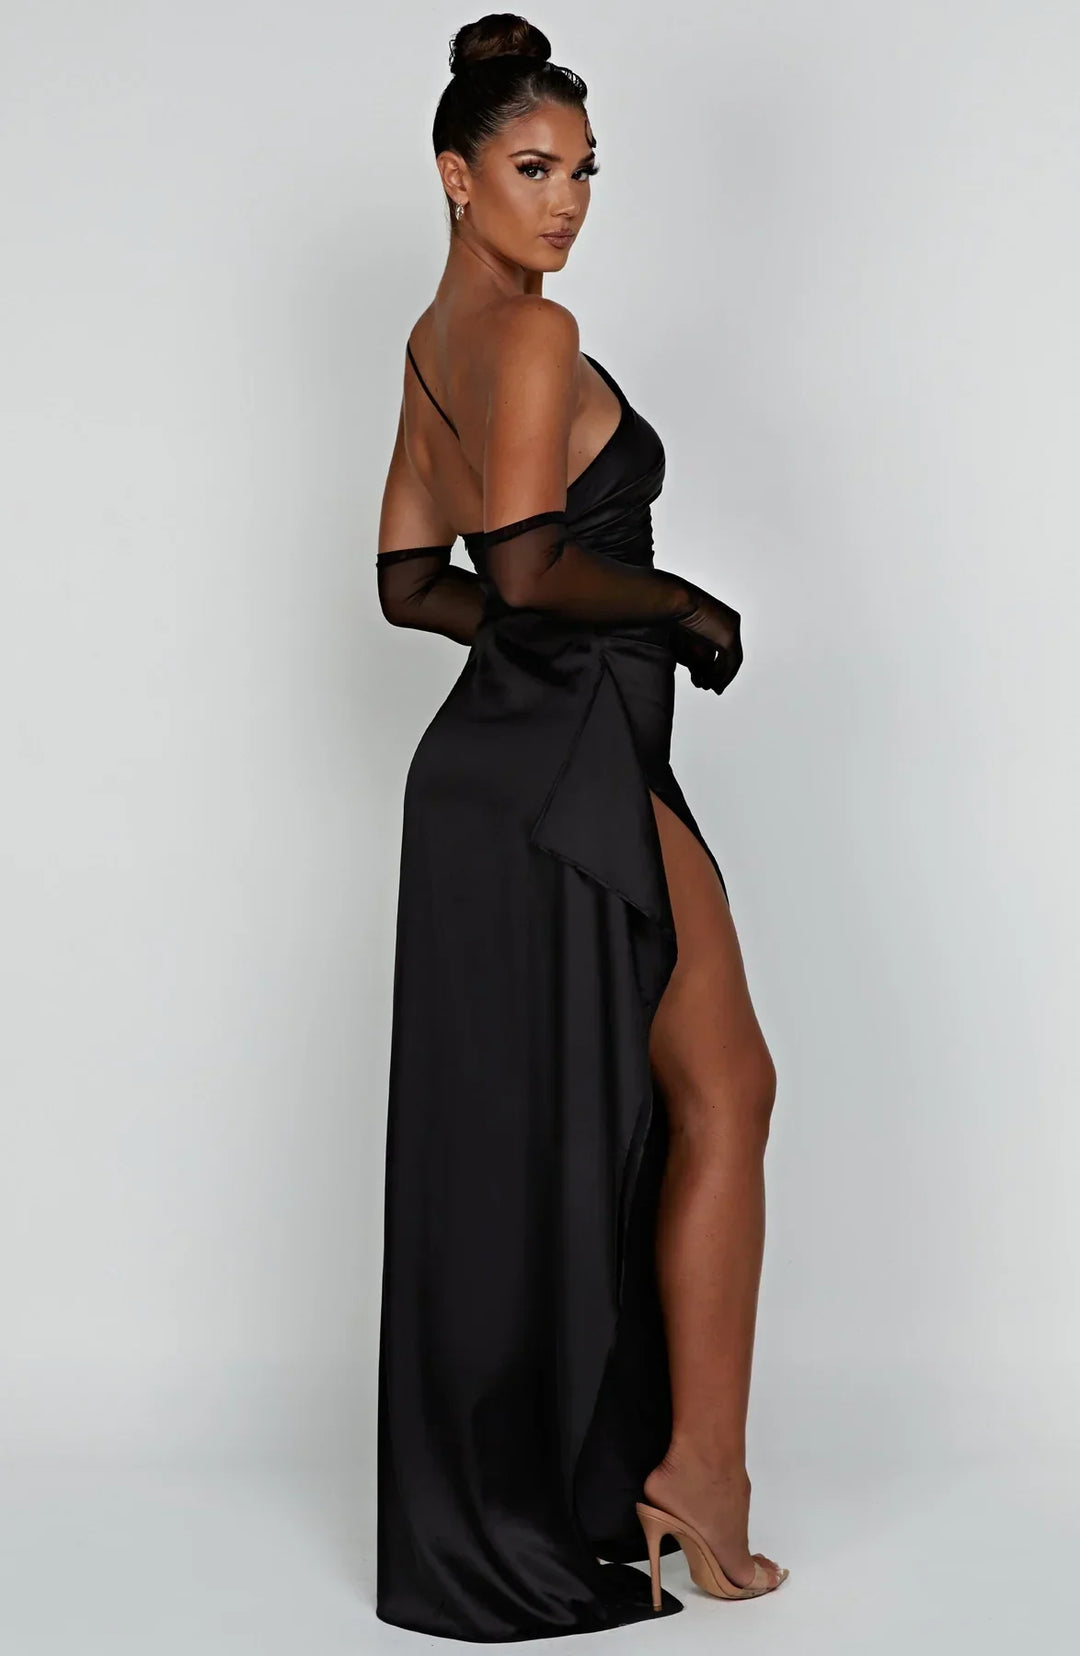 Jazzlyn - elegant one shoulder dress with slit